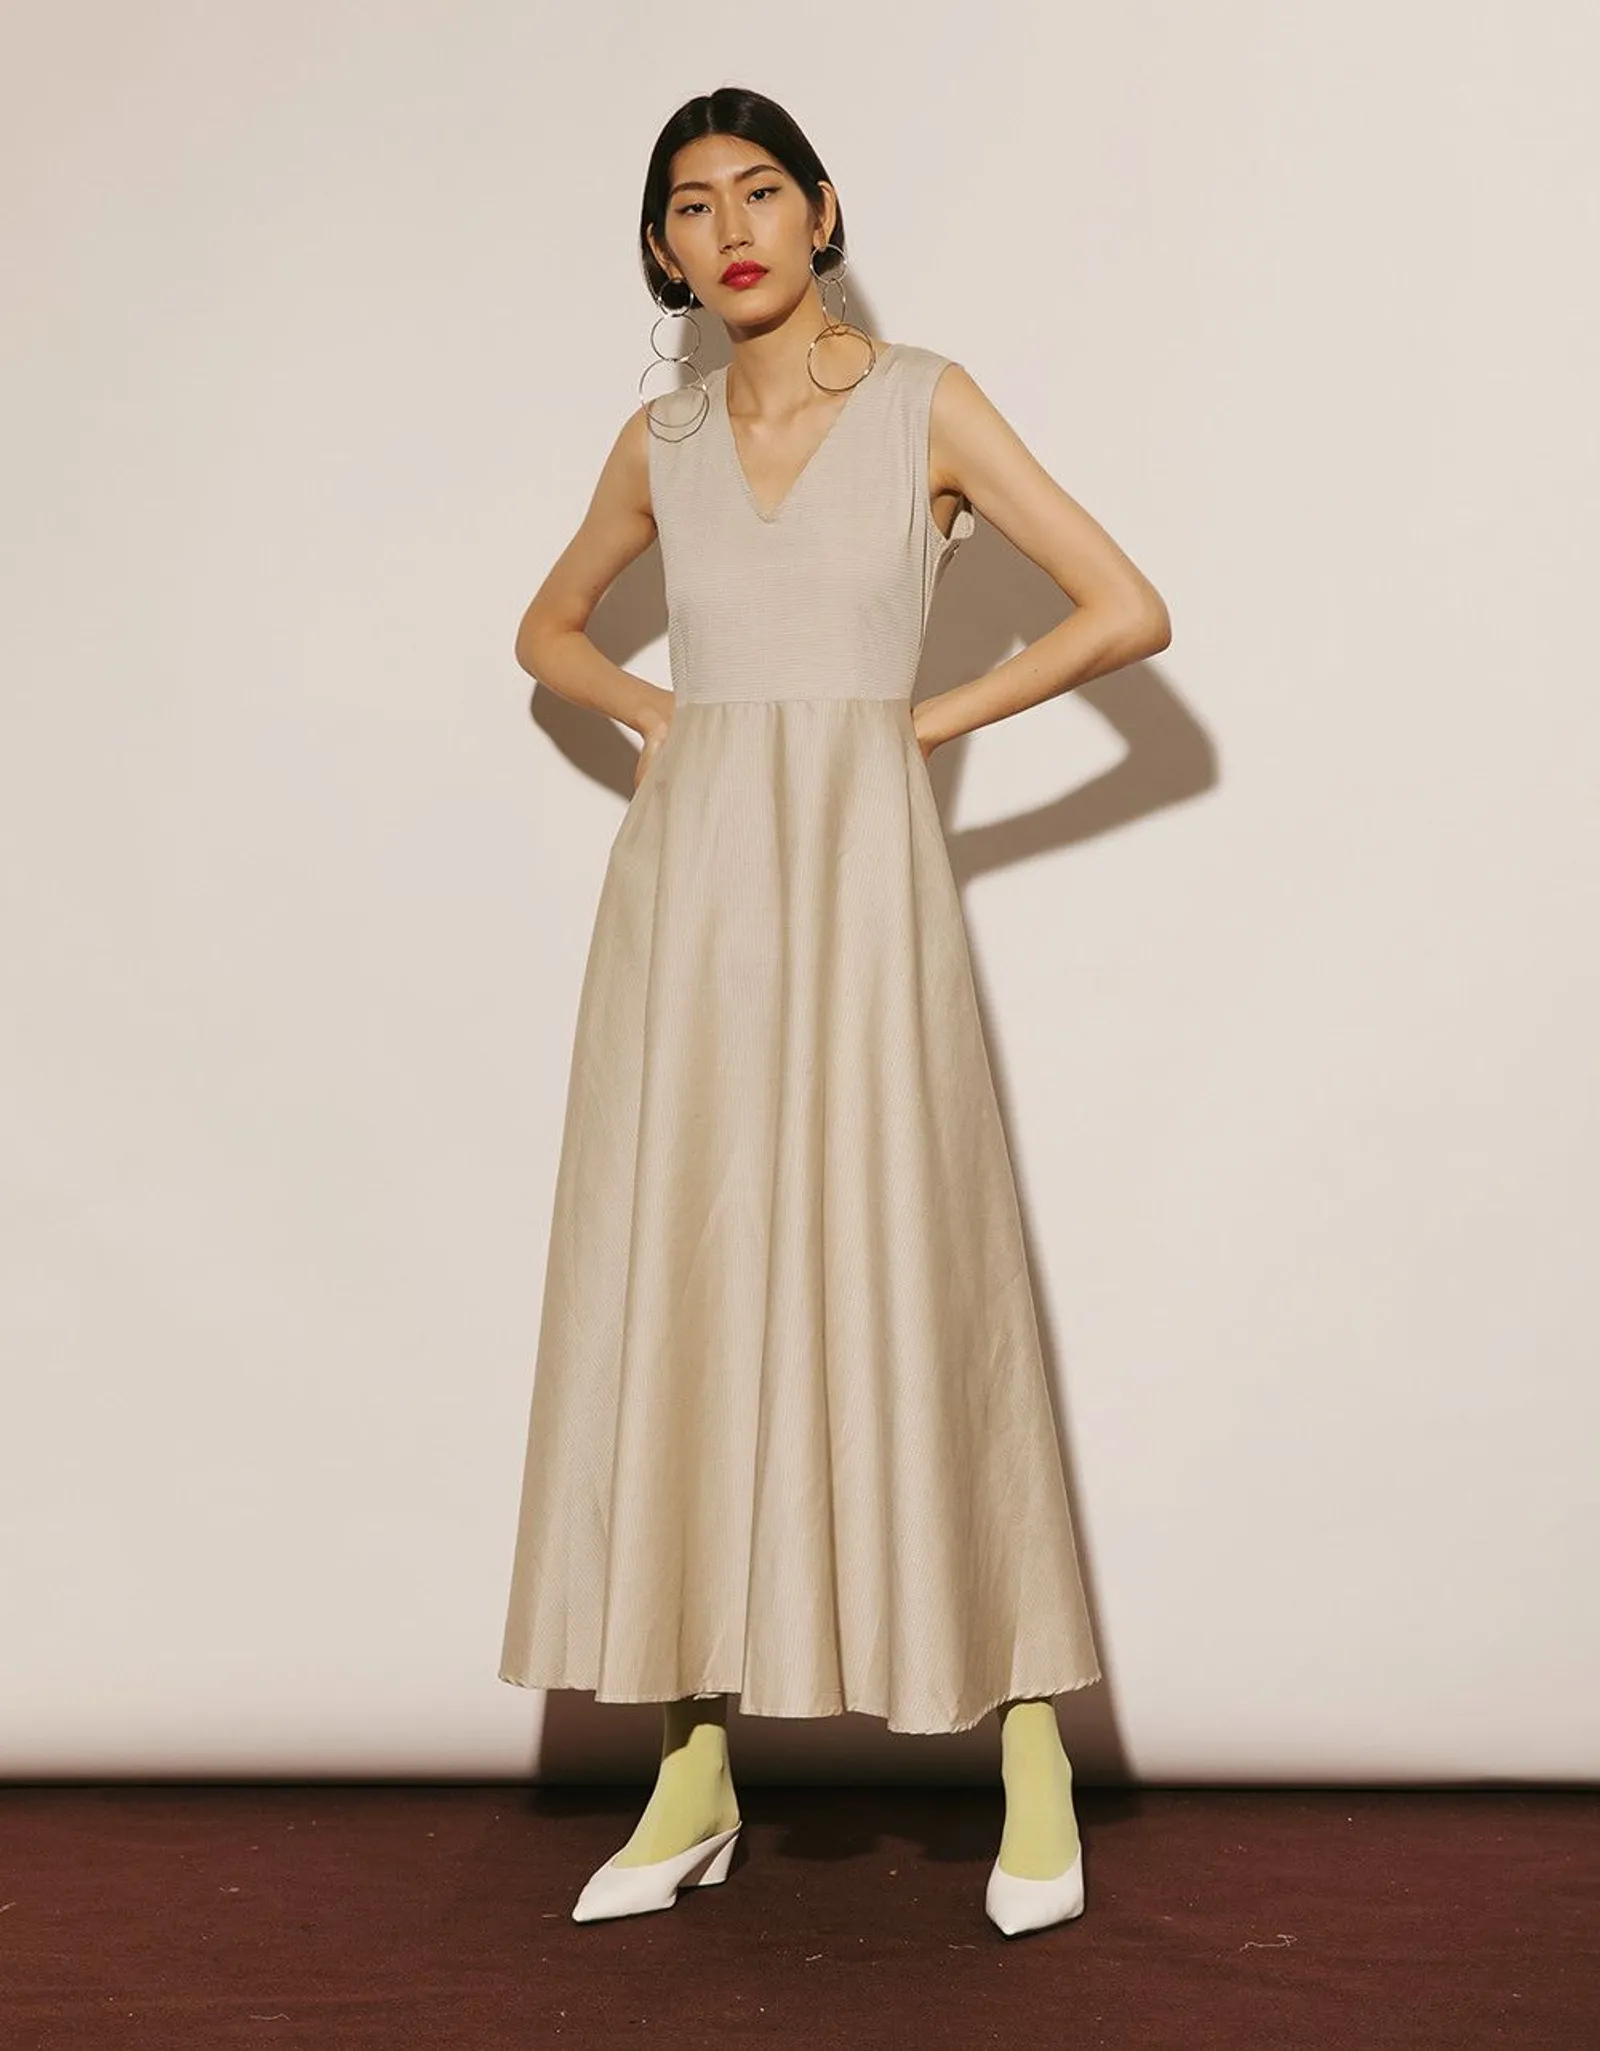 Tampil Trendi saat Kencan, 7 Model Dress Ini Menjadi Pilihan Terbaik